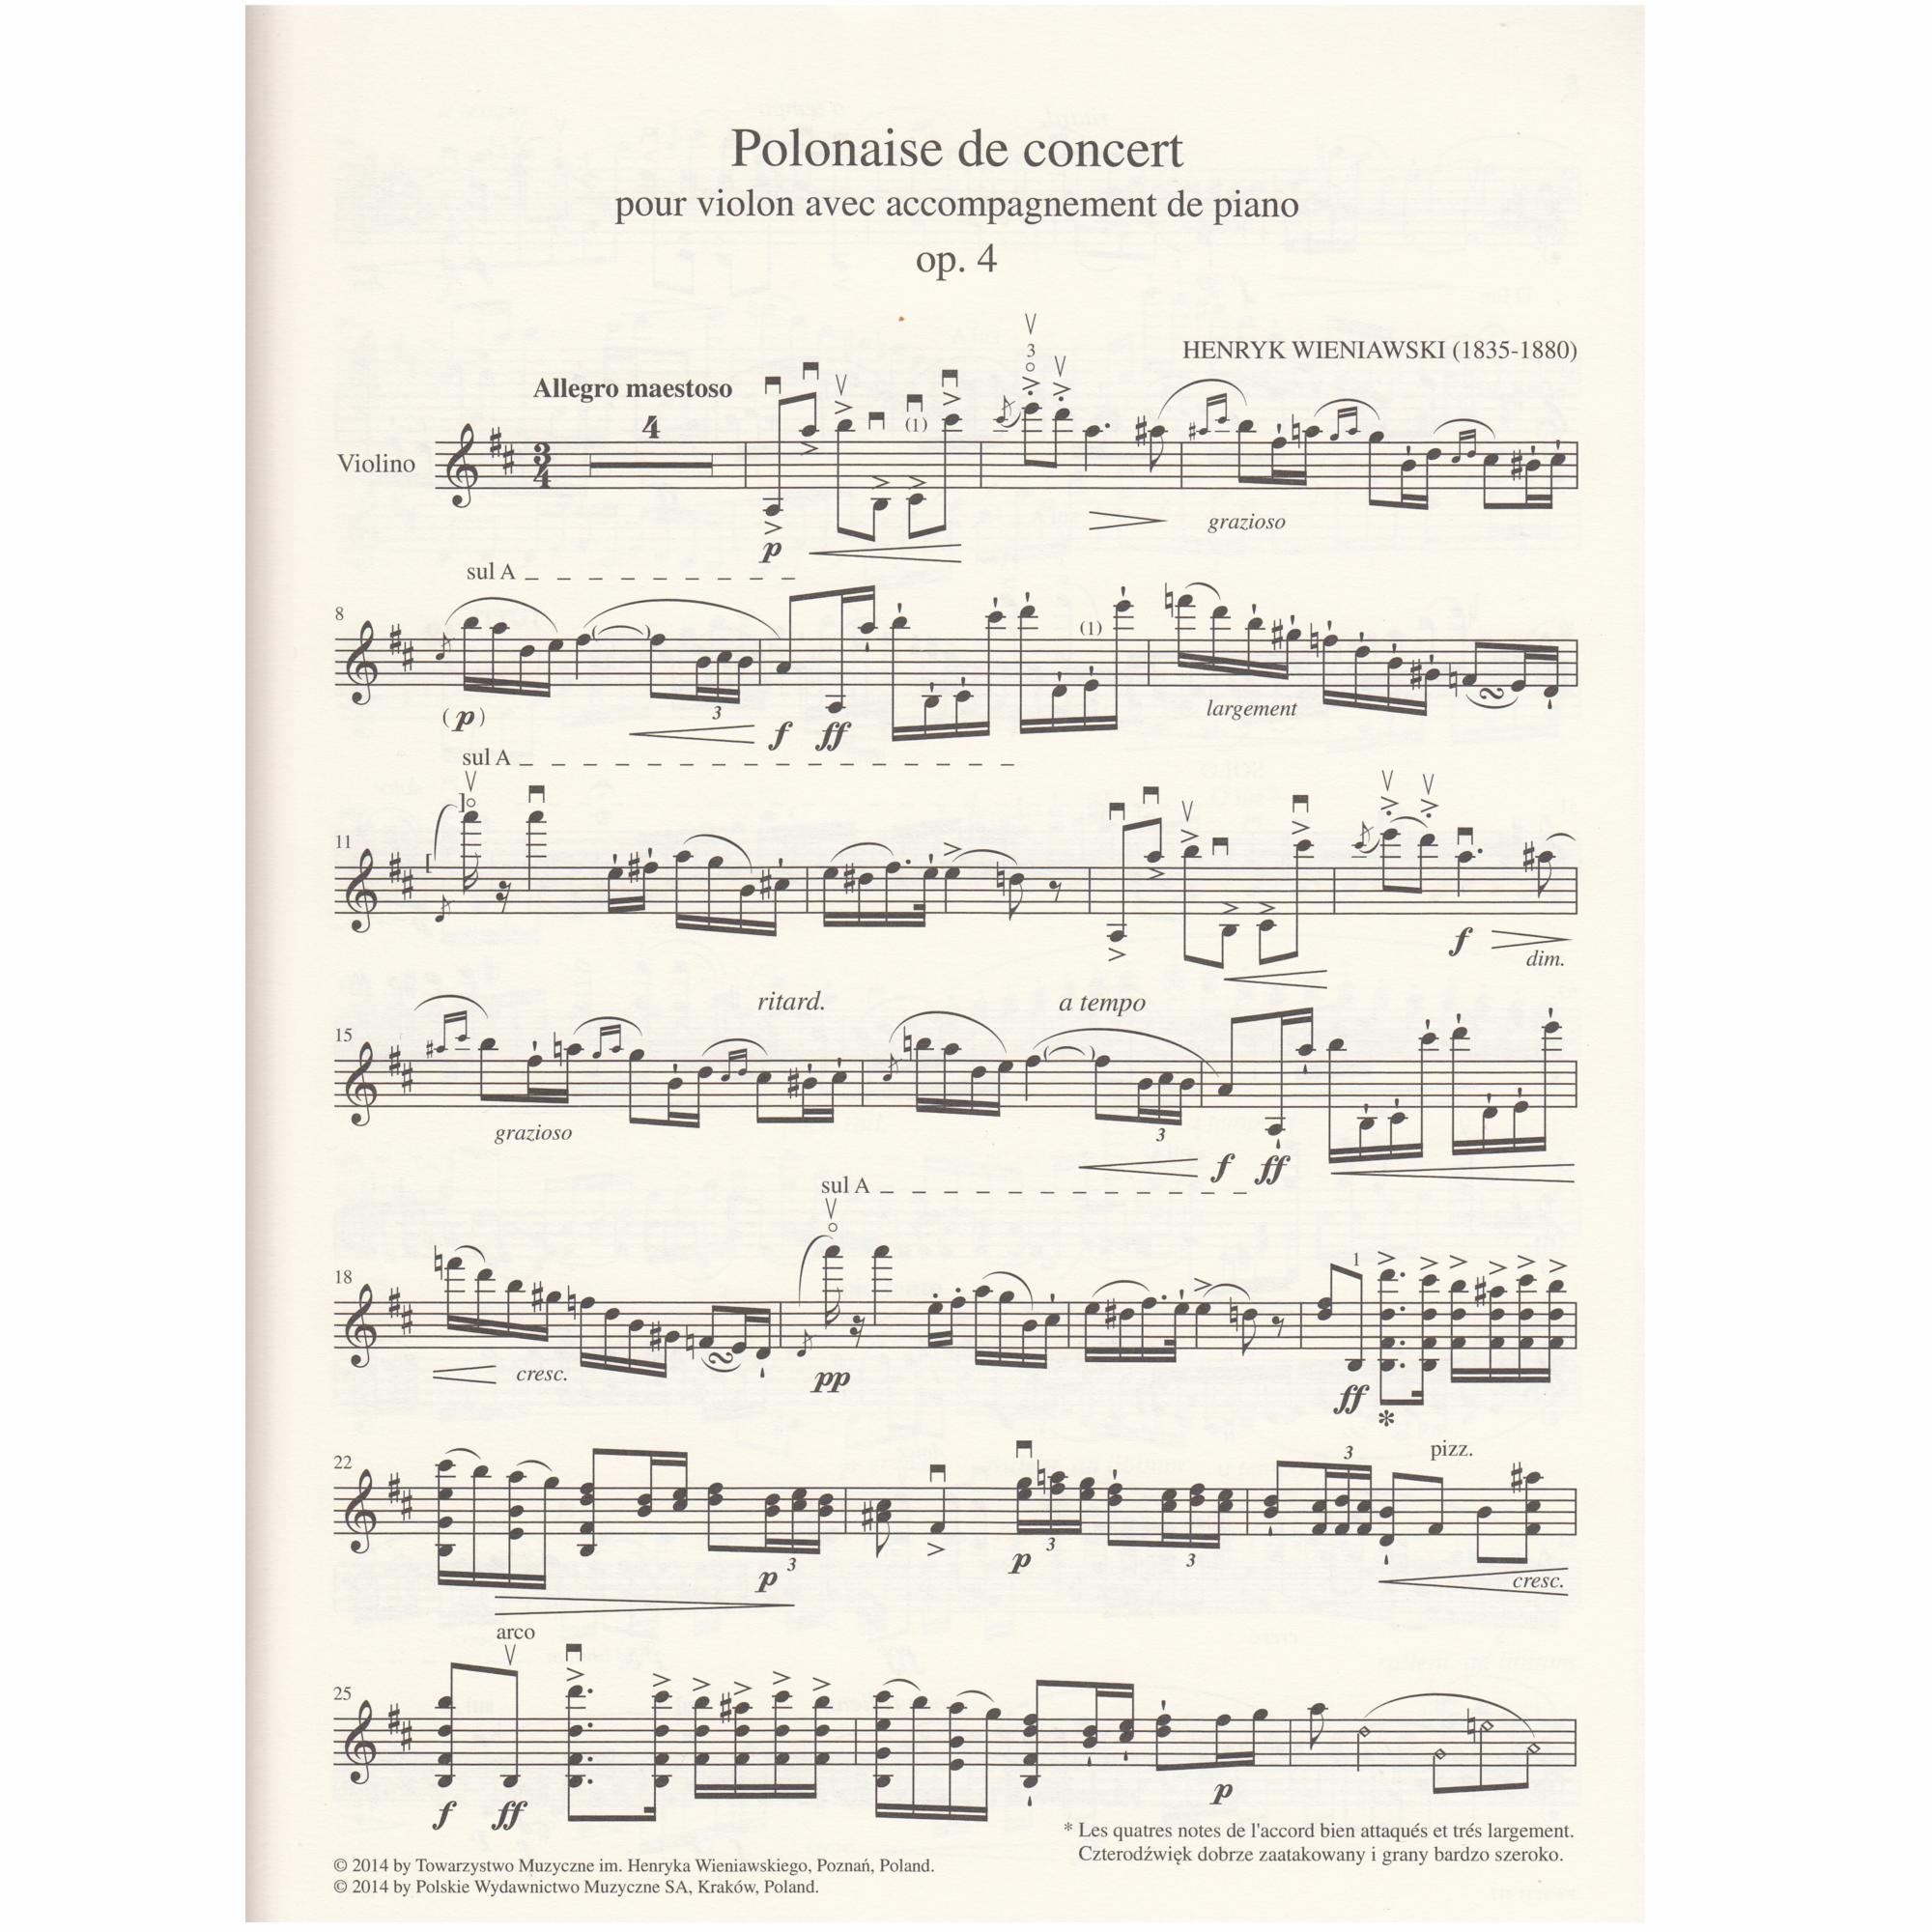 Polonaise de Concert in D Major, Op. 4